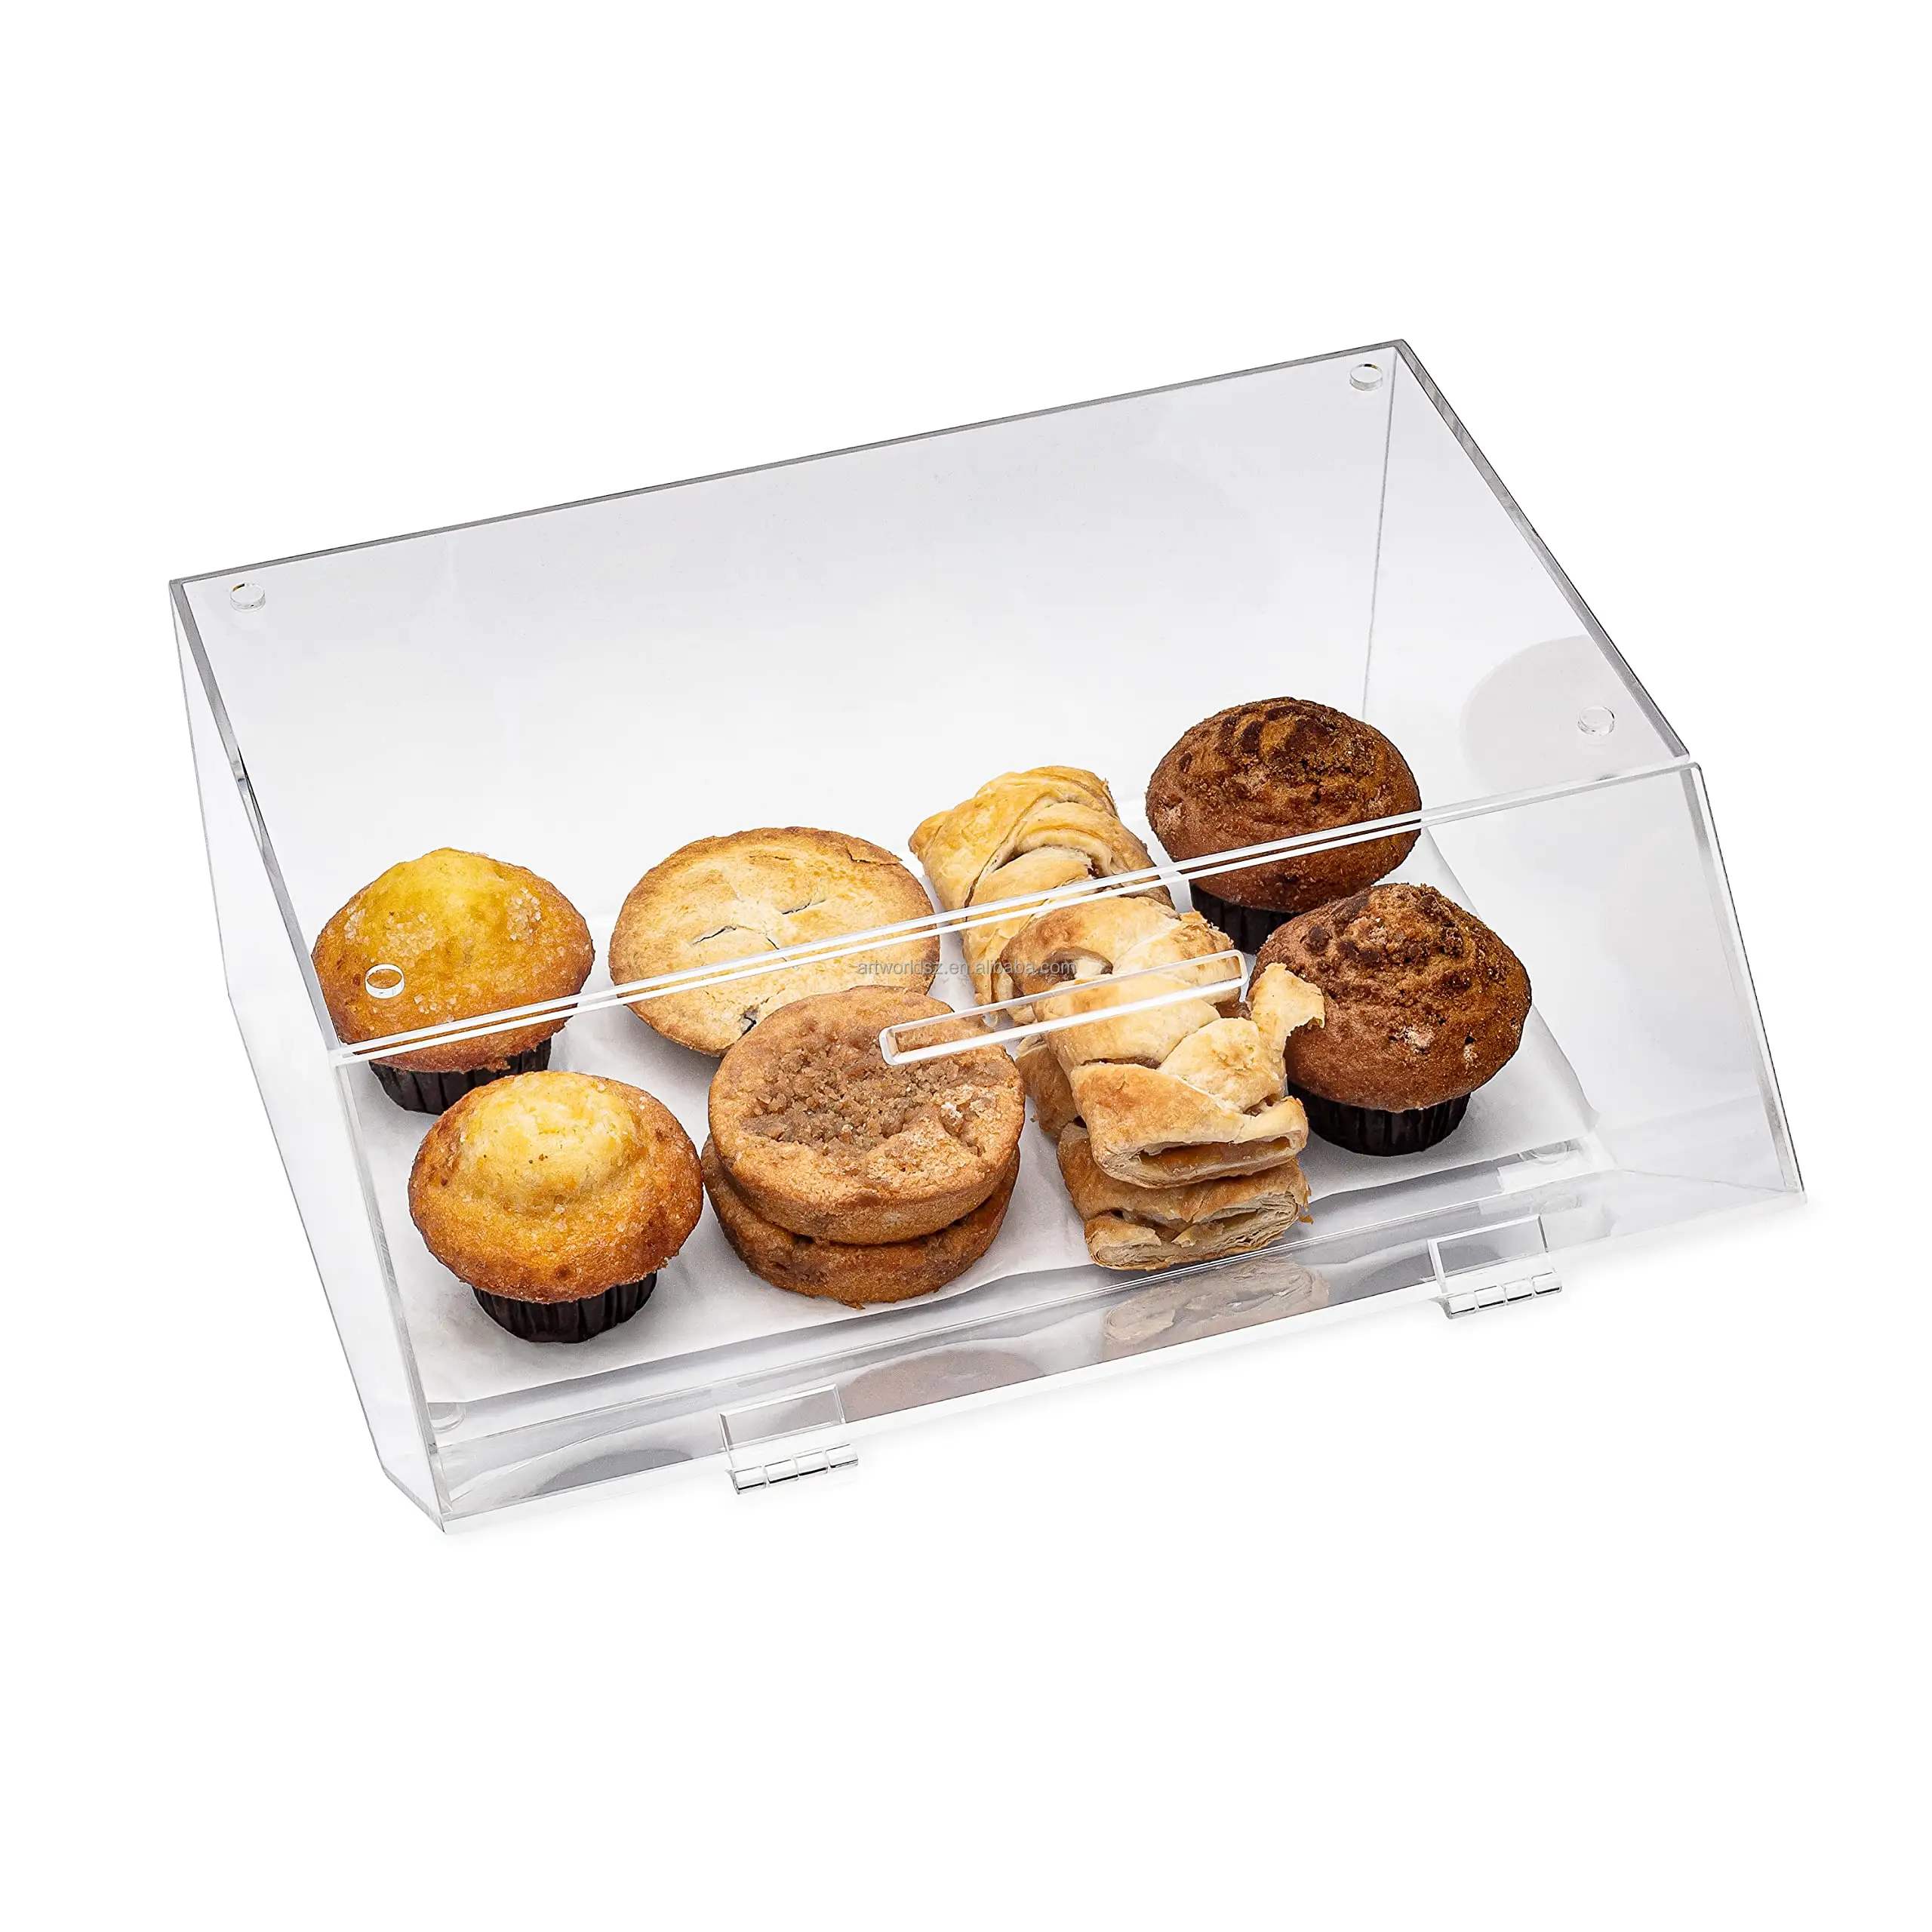 Artworld muestra OEM transparencia acrílico mostrador de alimentos pan Donut estante de exhibición panadería vitrina